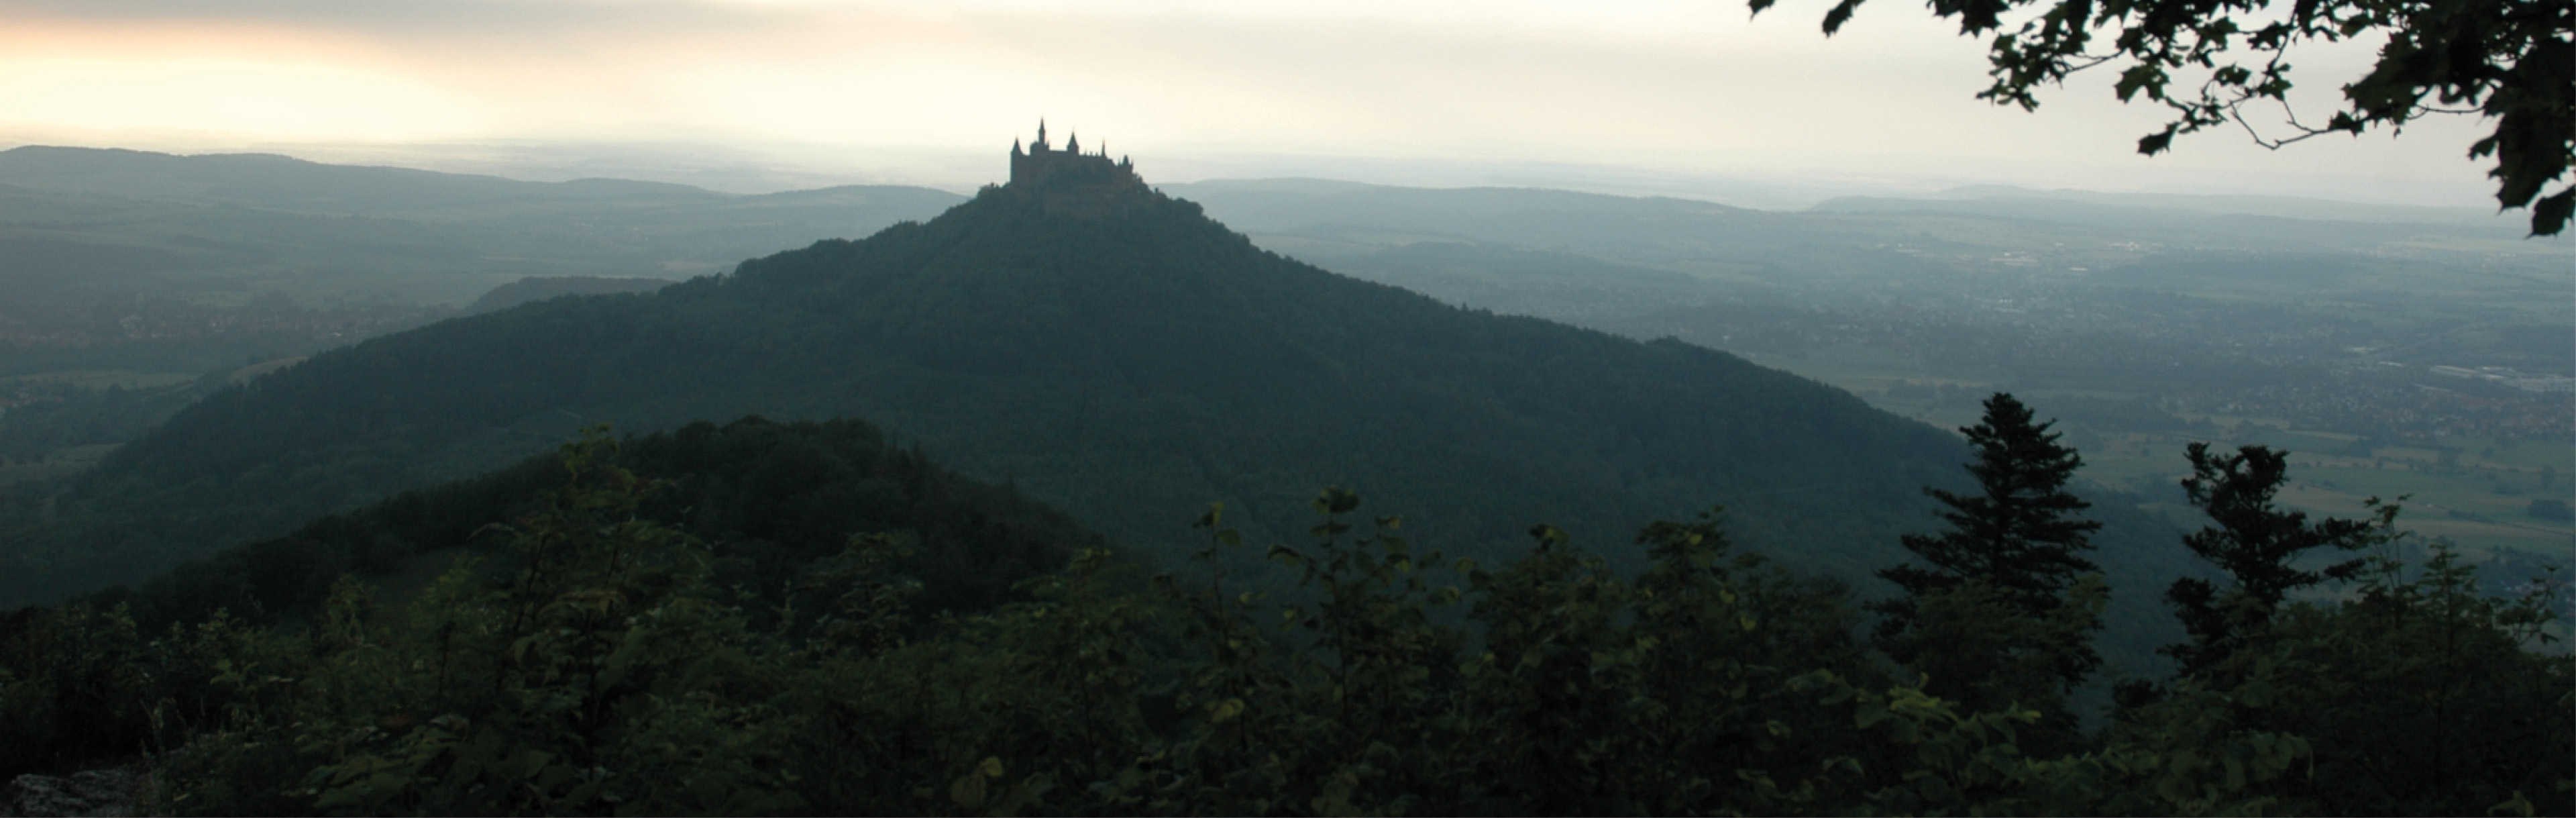 Blick auf die Burg Hohenzollern